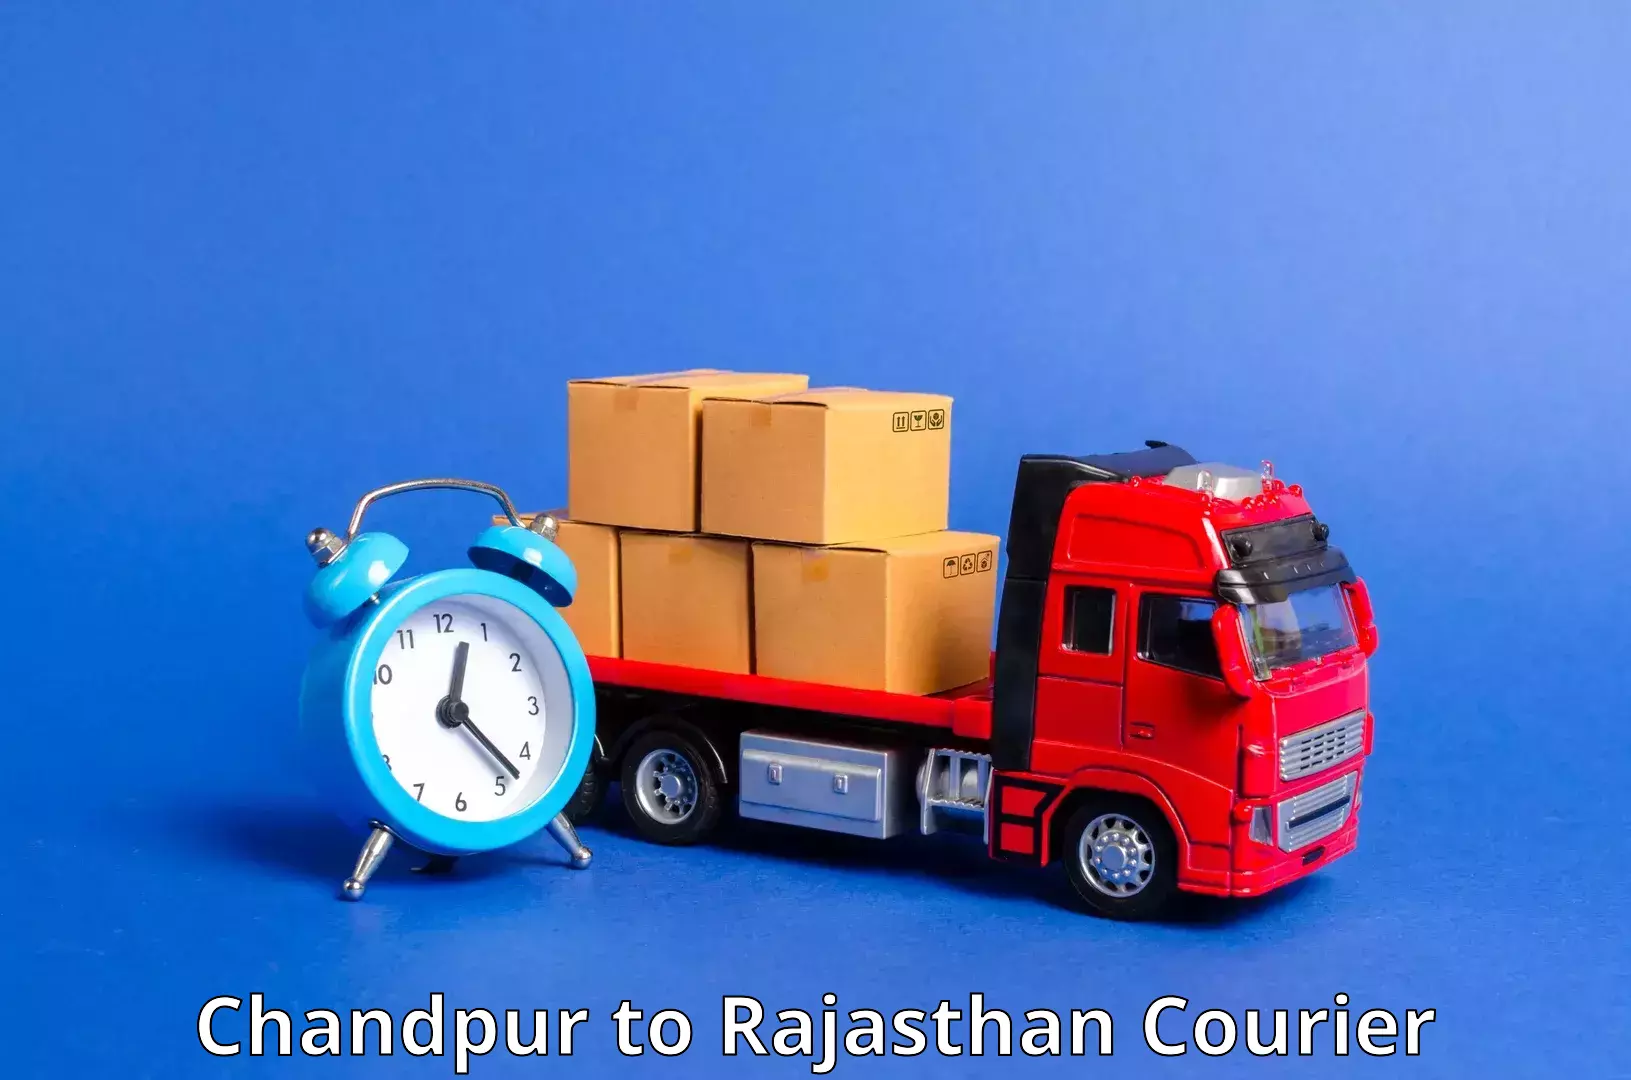 Premium courier solutions Chandpur to Bikaner